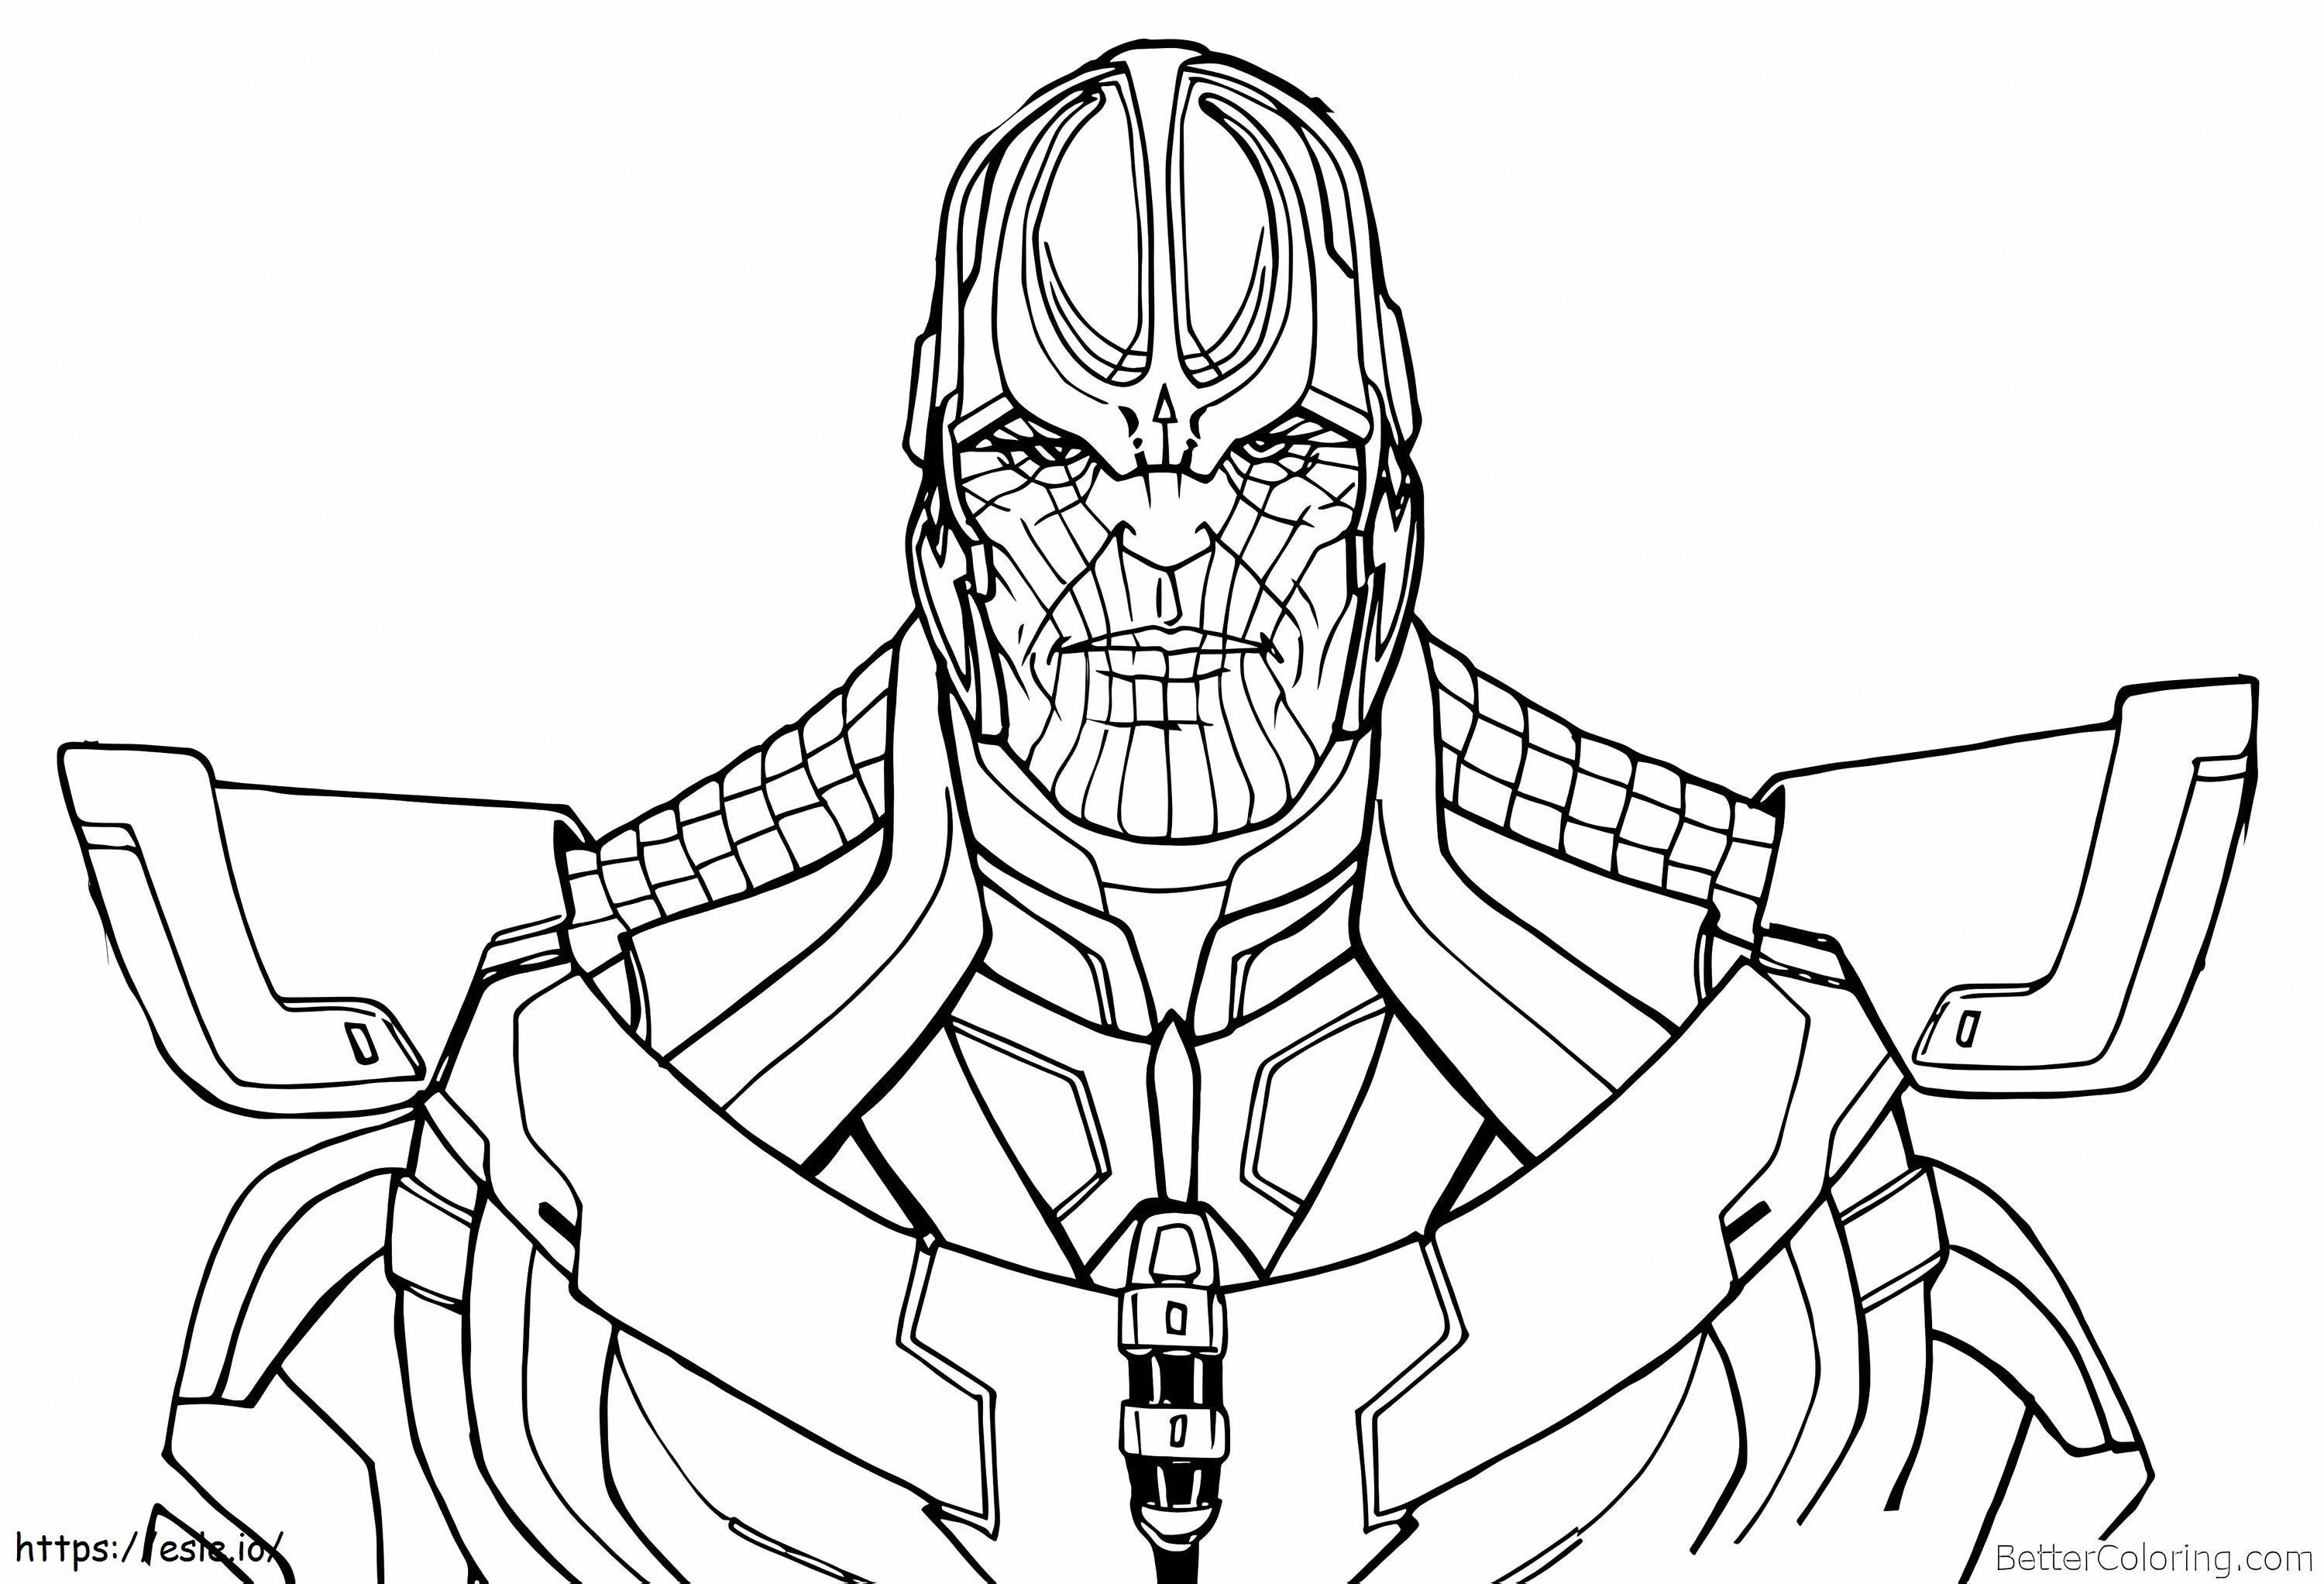 Coloriage 1540288368 Thanos du dessin au trait Avengers Infinity War à imprimer dessin